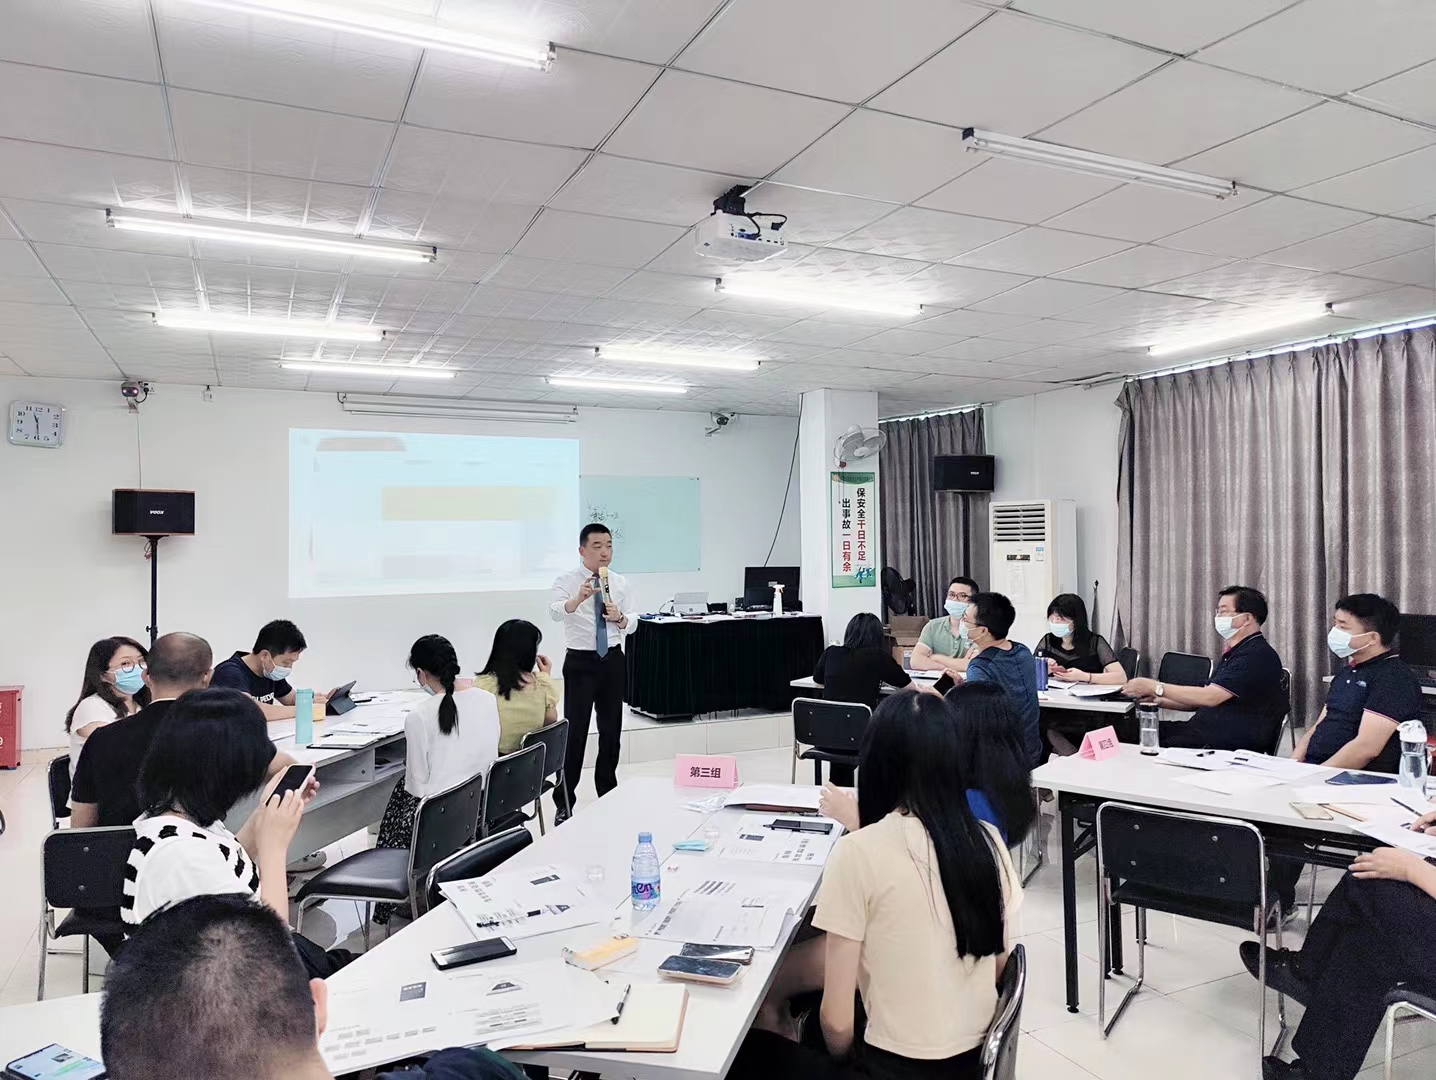 陈西君老师 7月9号给东莞某制造型企业40位中高层管理者讲授《MTP中高层管理技能提升》课程